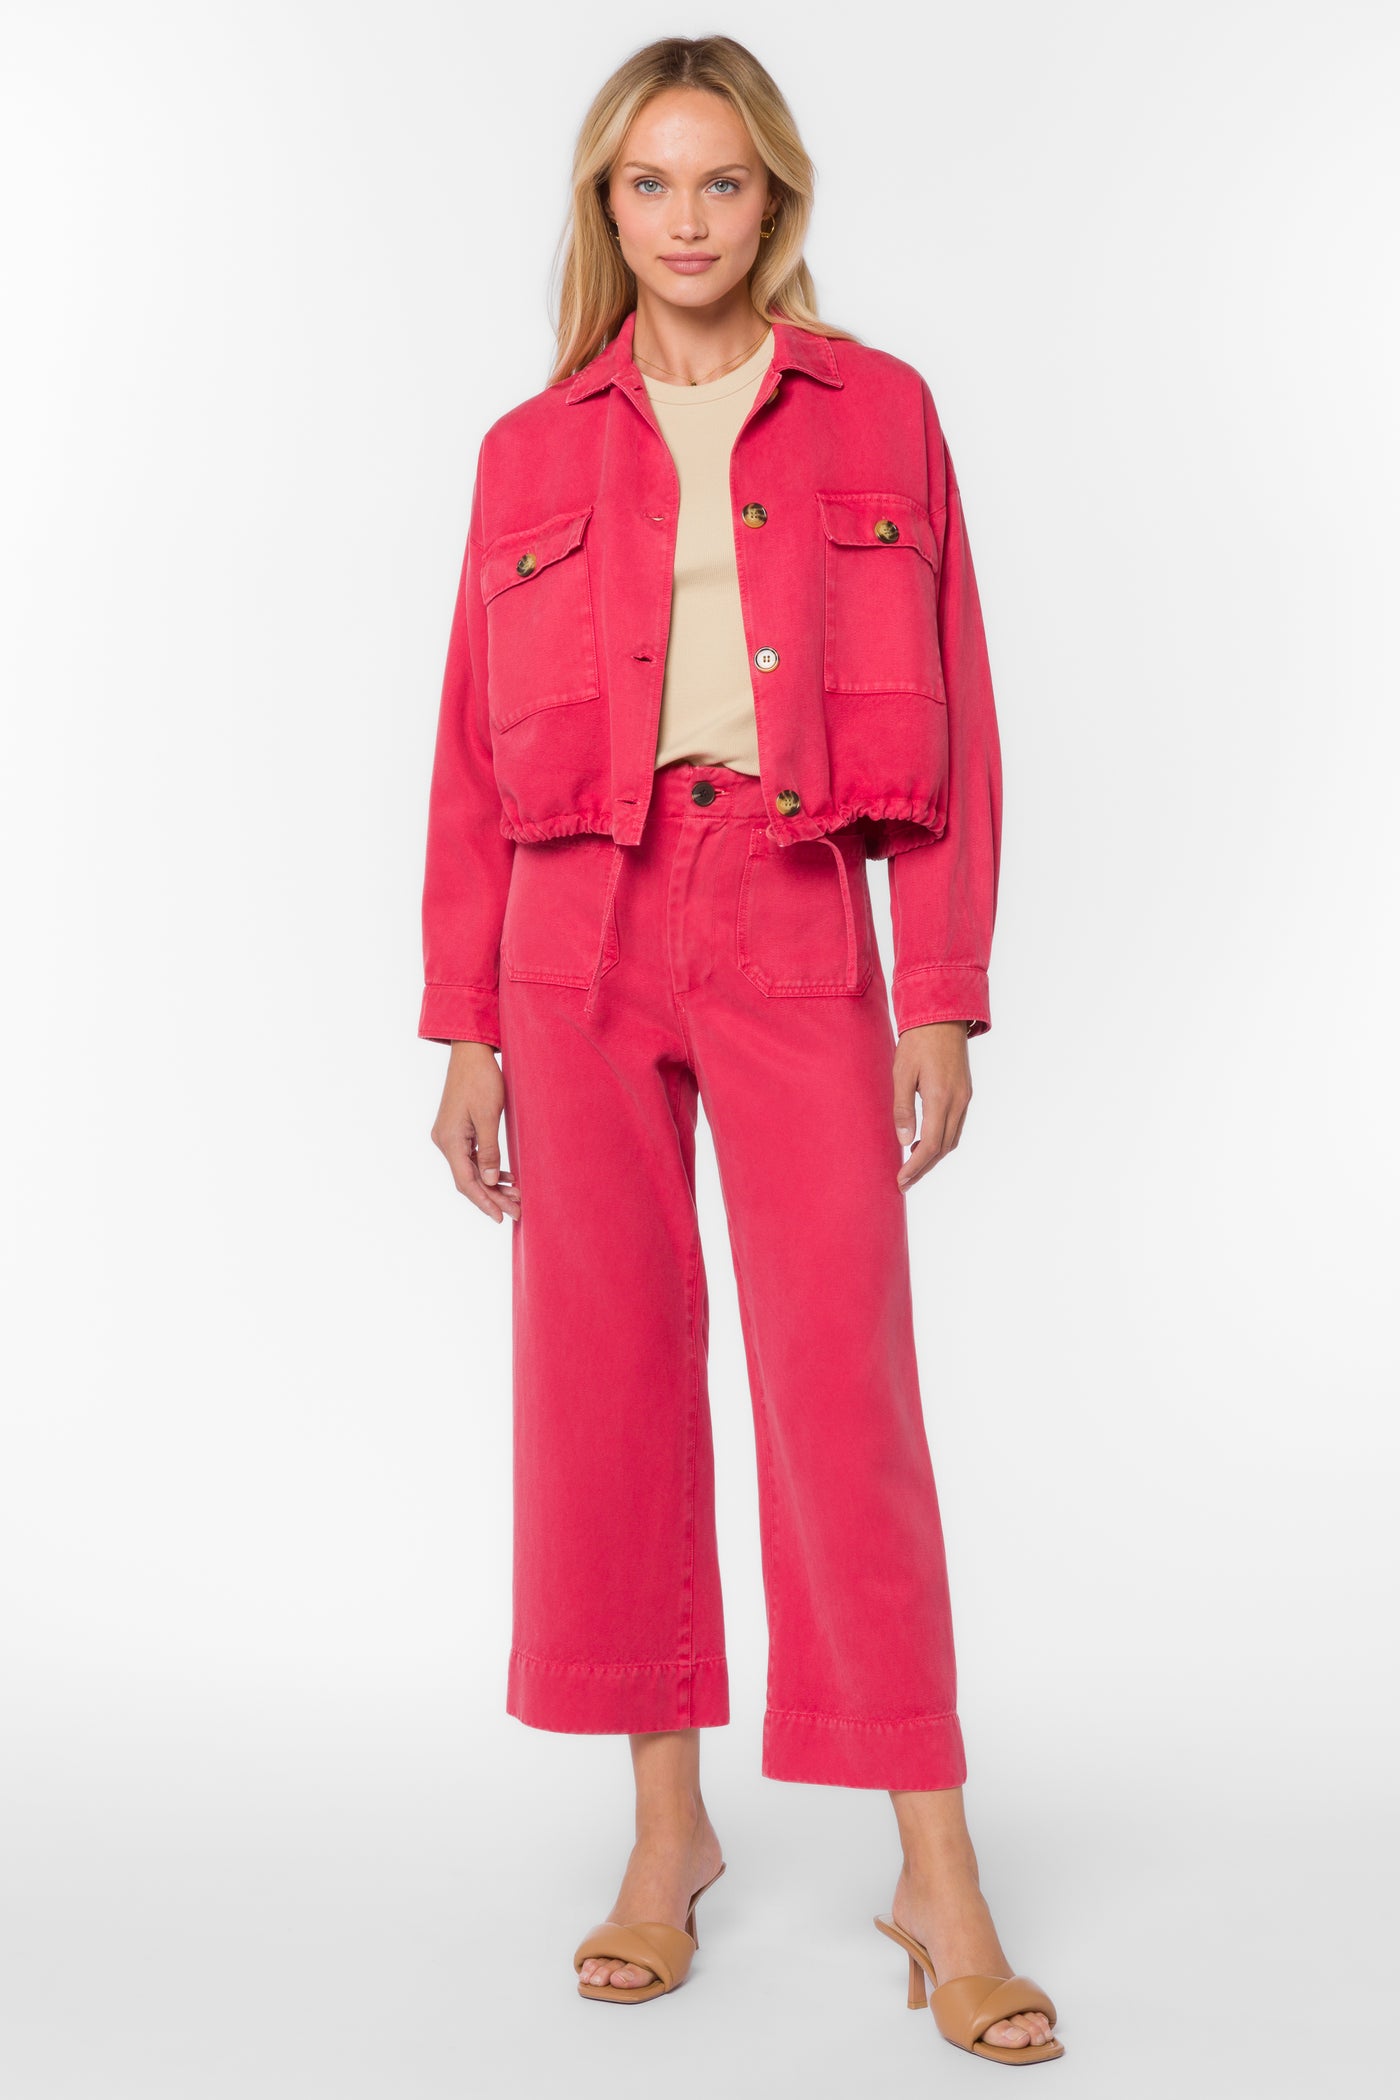 Elvera Ruby Jacket - Jackets & Outerwear - Velvet Heart Clothing